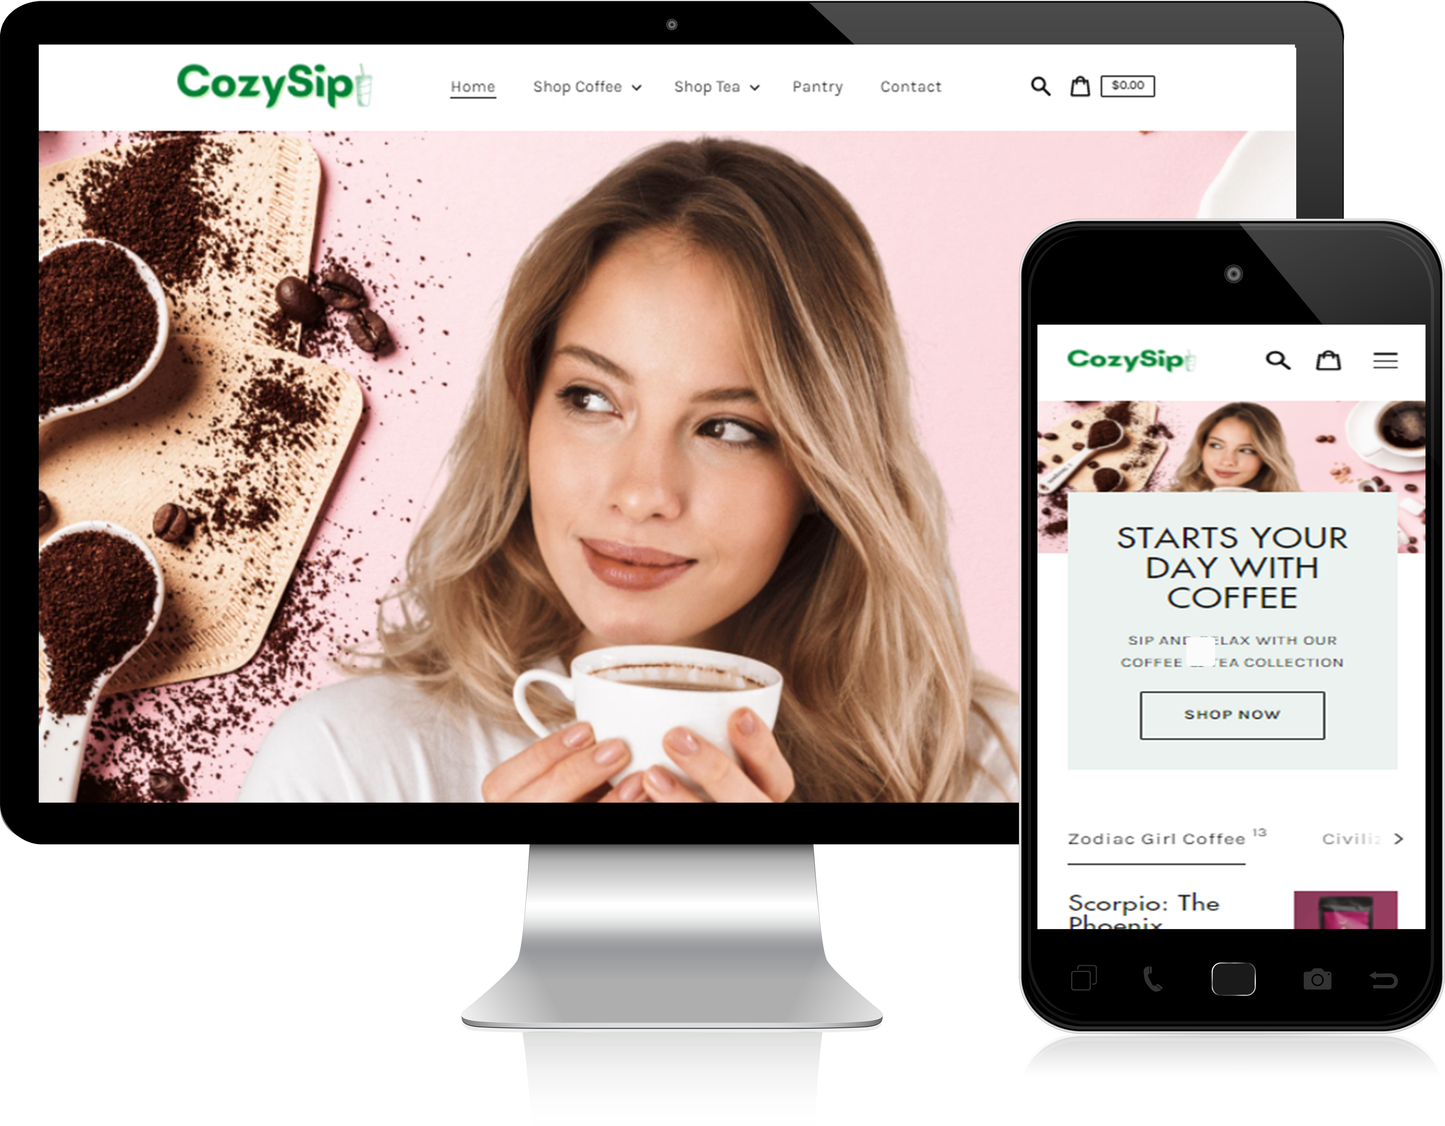 CozySip.com